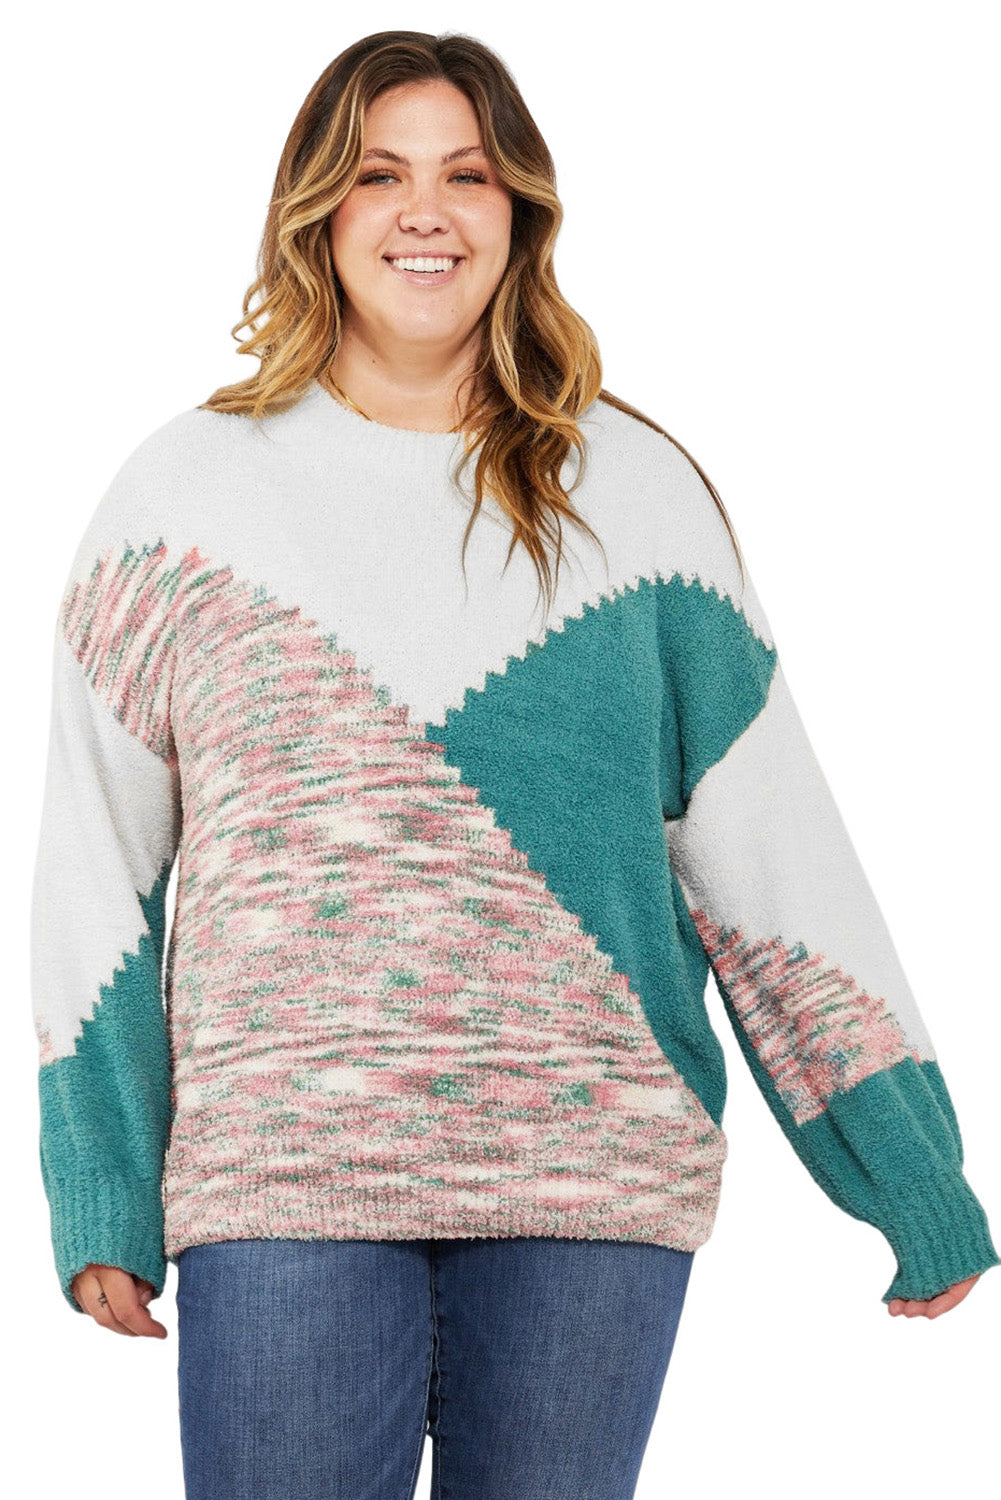 Večbarvni nazobčani barvni pulover velike velikosti